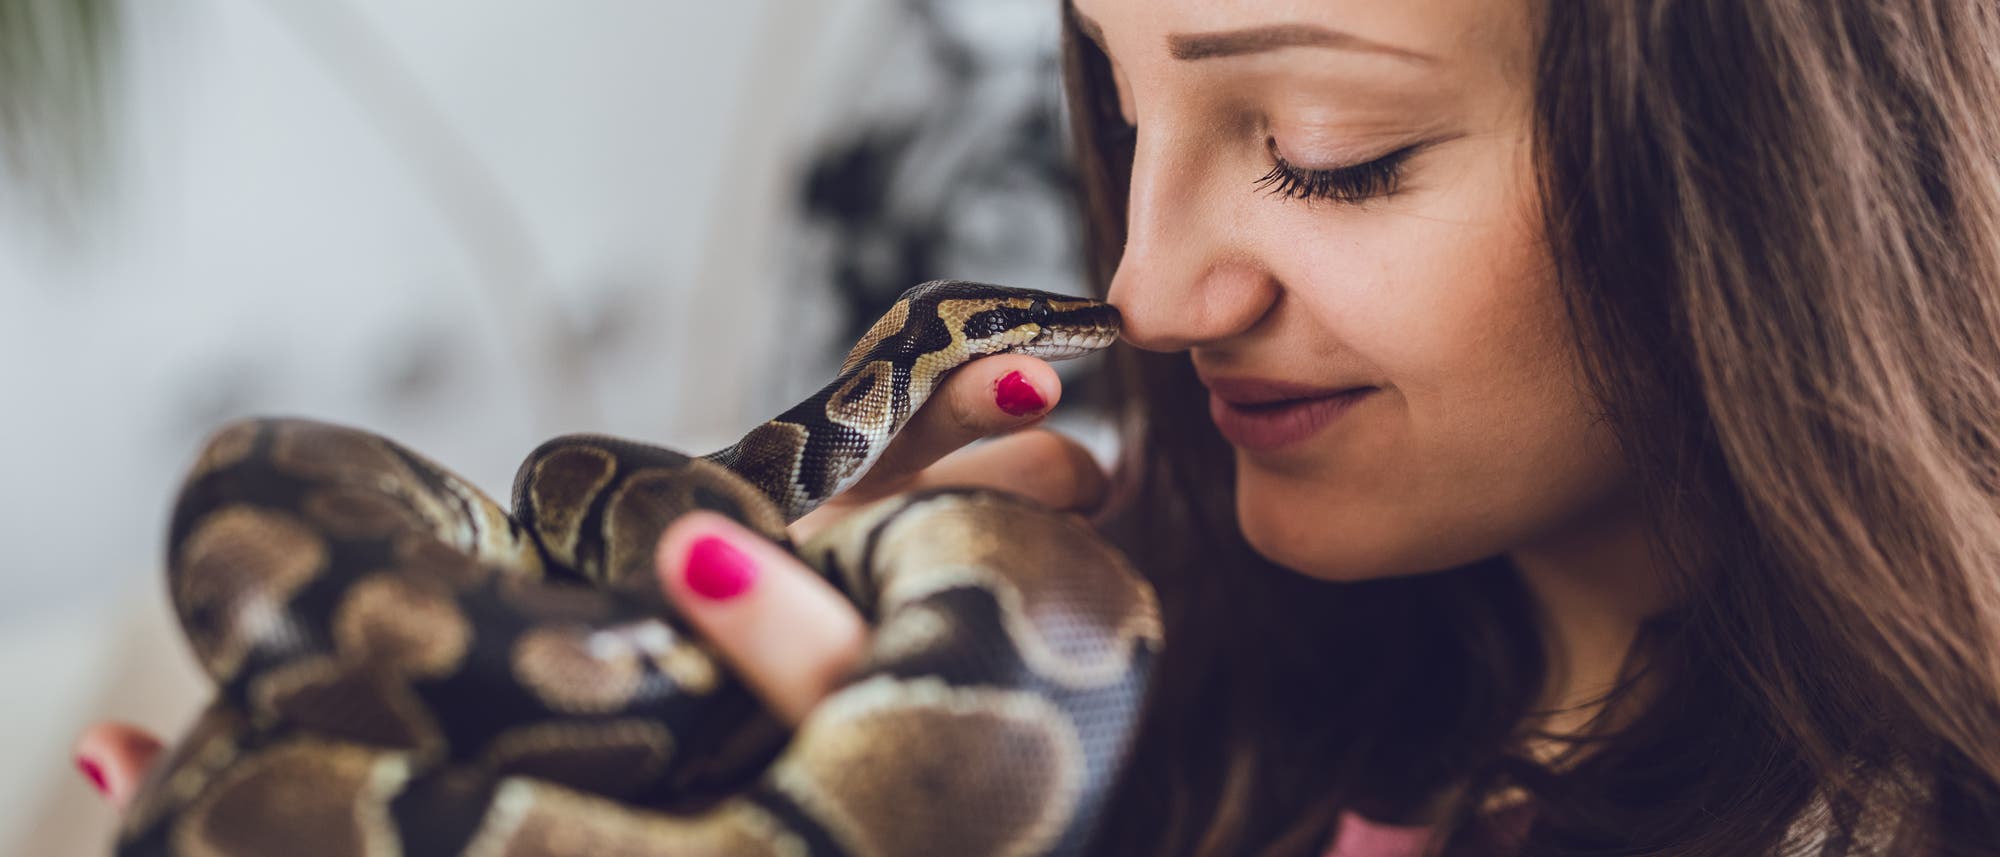 Eine junge Frau hält eine braun-schwarze Schlange und berührt mit ihrer Nasenspitze den Kopf des Tiers